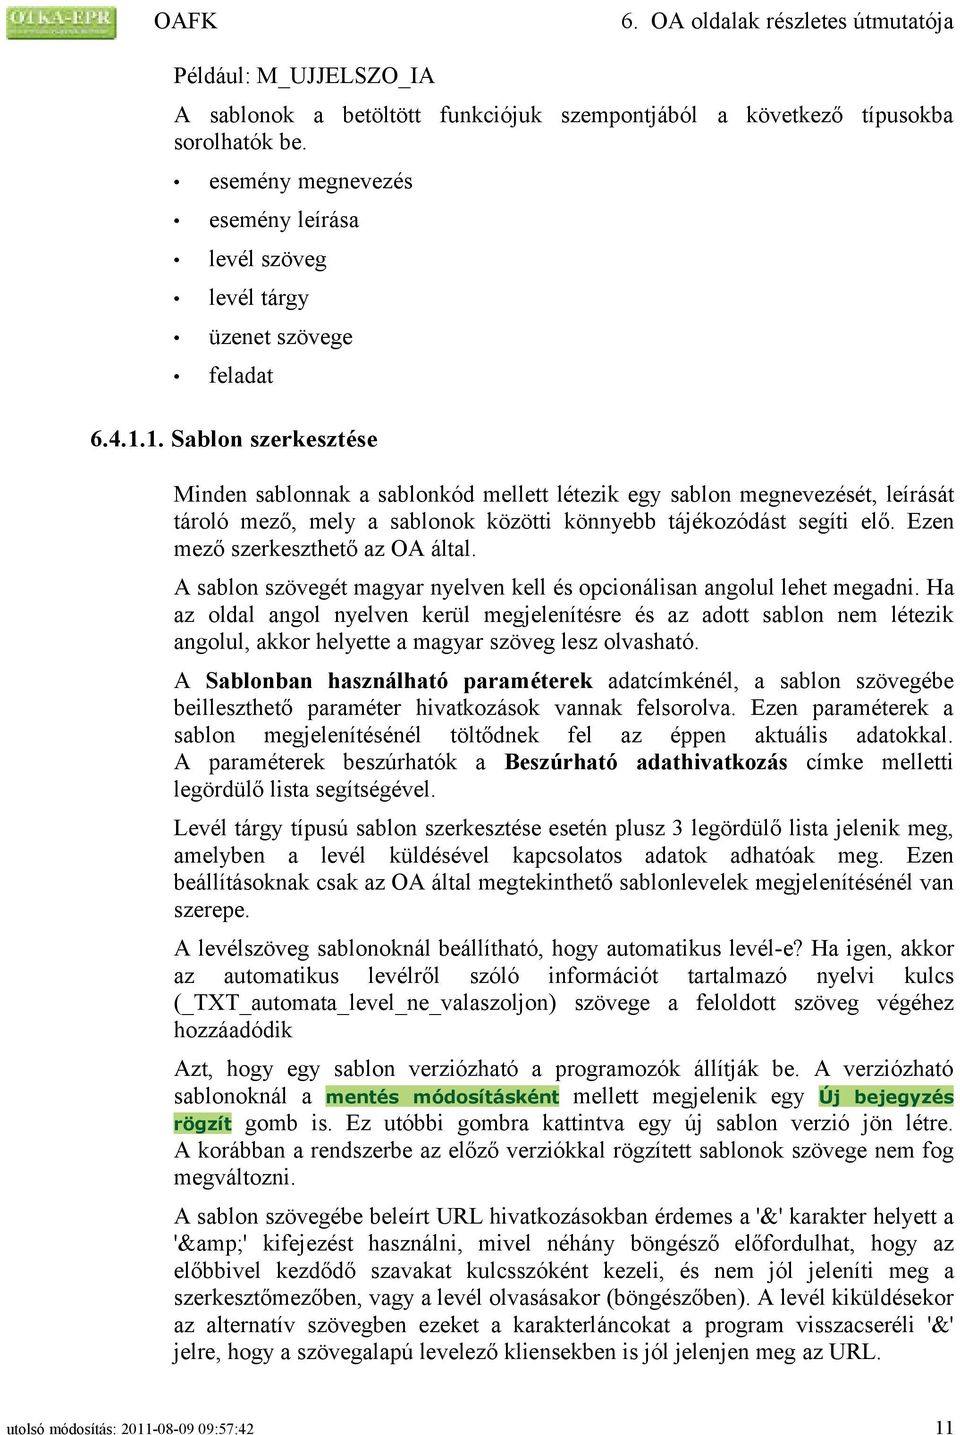 Ezen mező szerkeszthető az OA által. A sablon szövegét magyar nyelven kell és opcionálisan angolul lehet megadni.